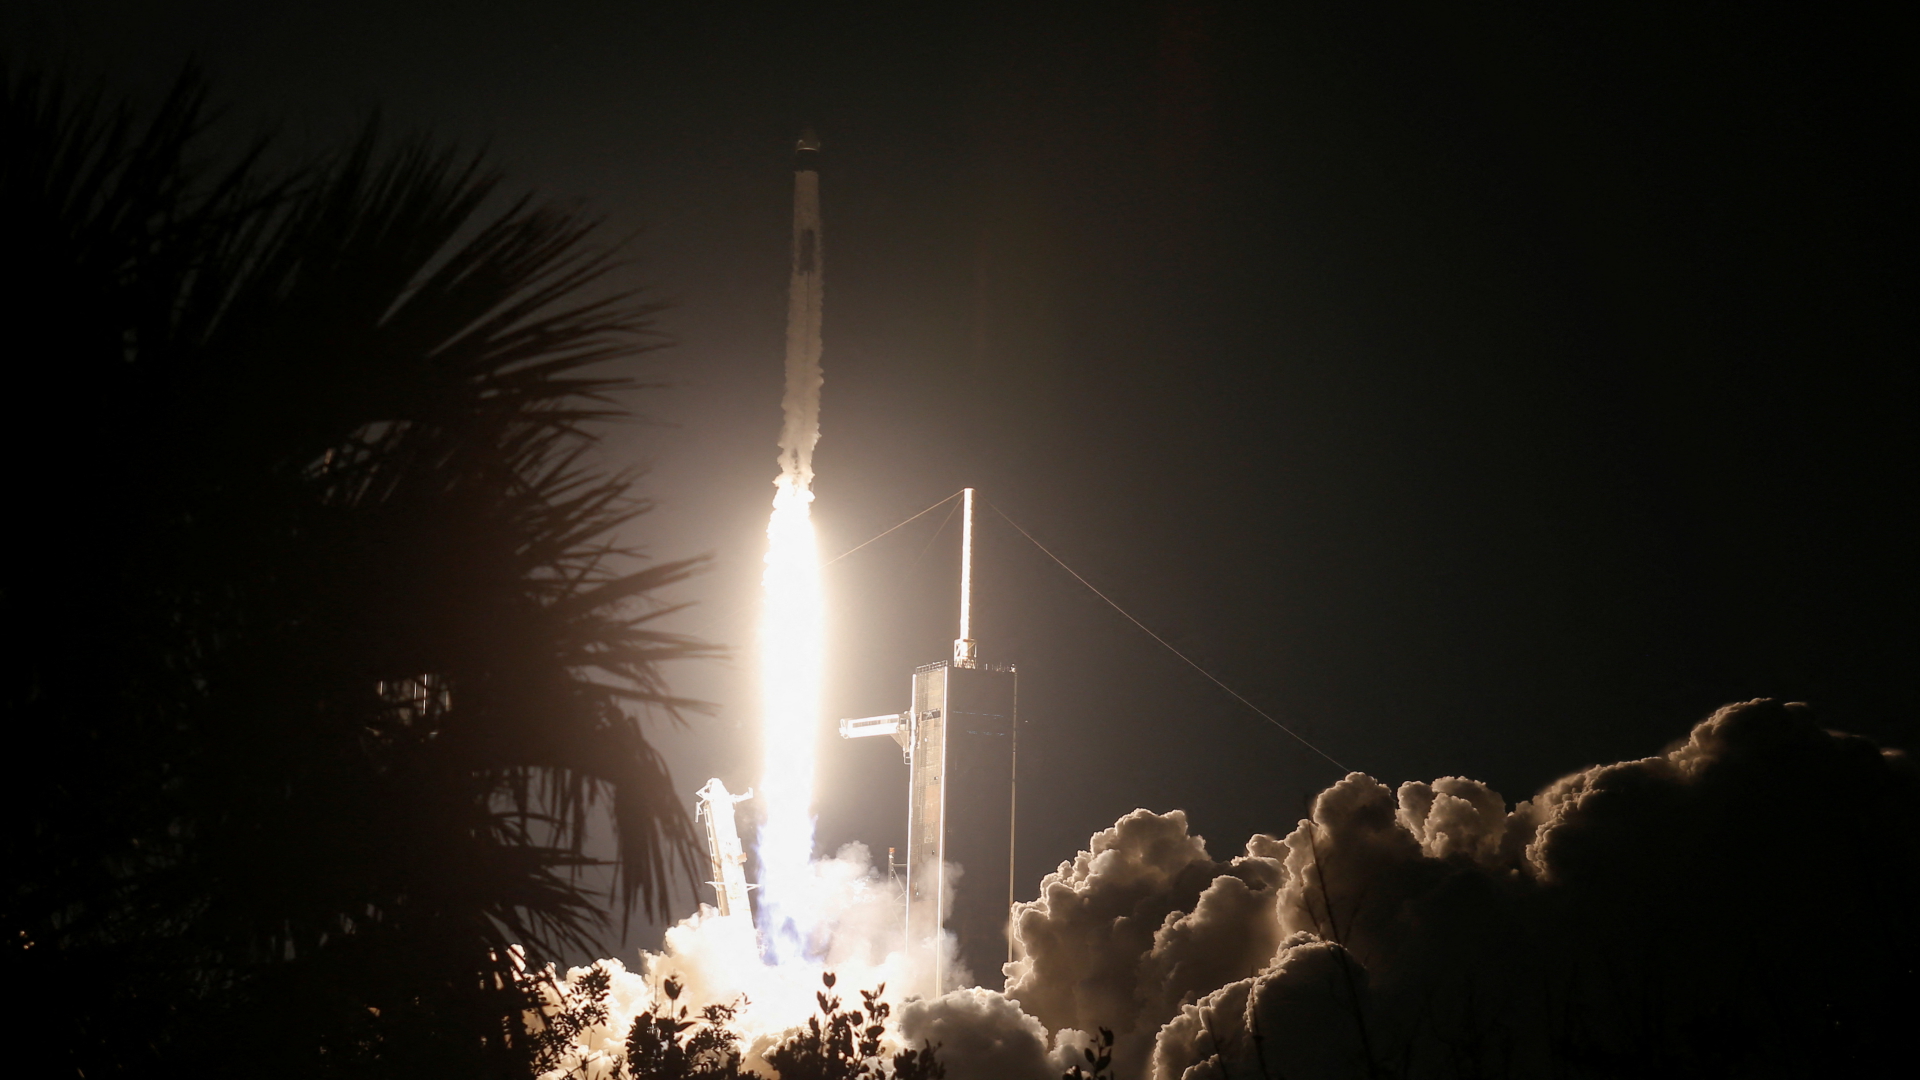 Eine Falcon-9-Rakete von SpaceX startet vom Kennedy Space Center in Cape Canaveral in den USA. | REUTERS